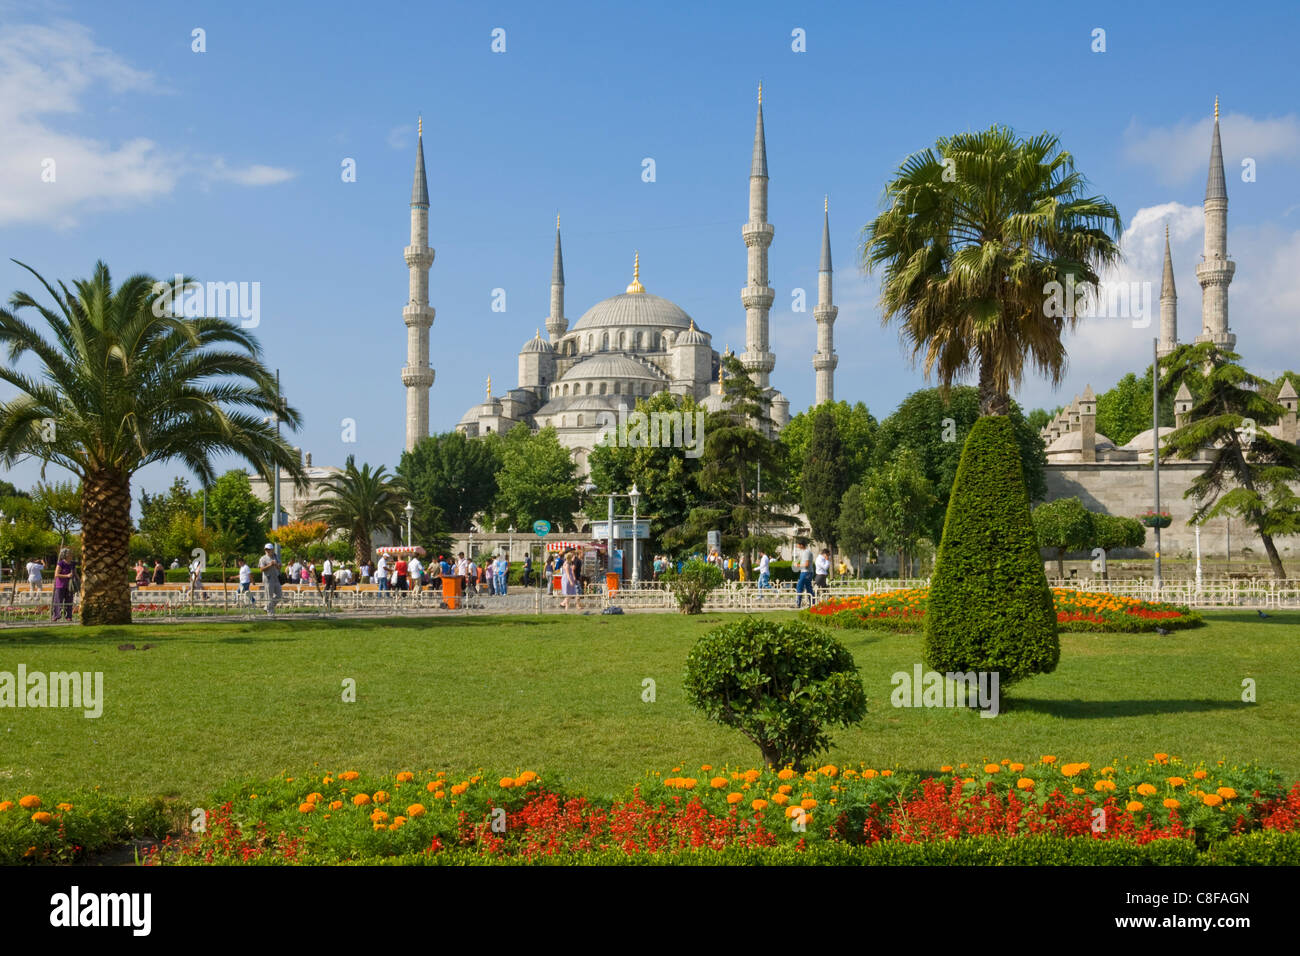 Die blaue Moschee (Sultan Ahmet Camii) mit Kuppeln und sechs Minarette, Sultanahmet, zentral-Istanbul, Türkei Stockfoto